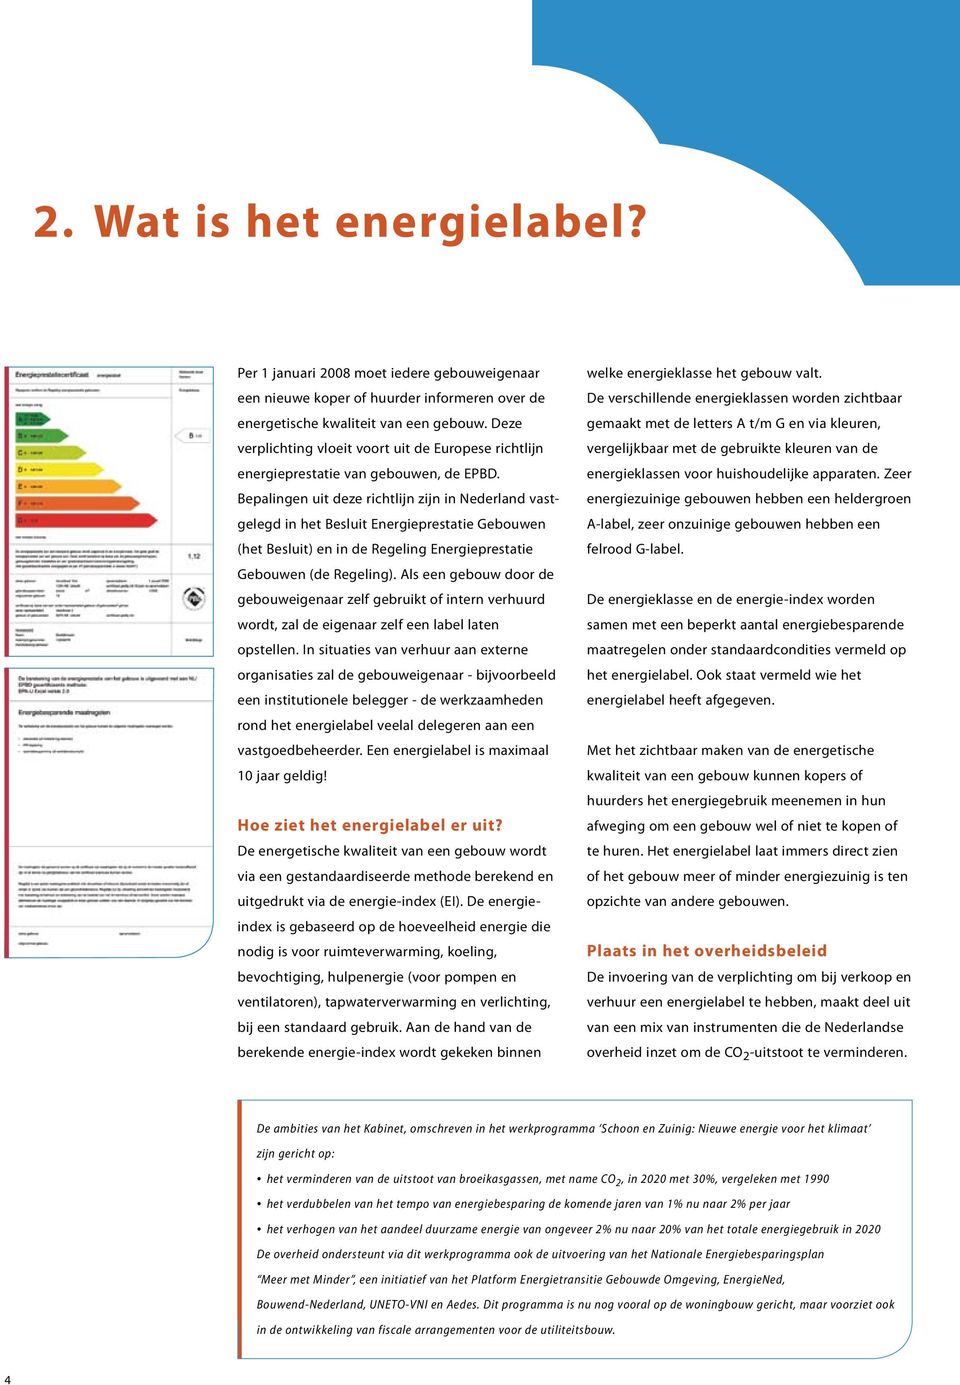 Bepalingen uit deze richtlijn zijn in Nederland vastgelegd in het Besluit Energieprestatie Gebouwen (het Besluit) en in de Regeling Energieprestatie Gebouwen (de Regeling).